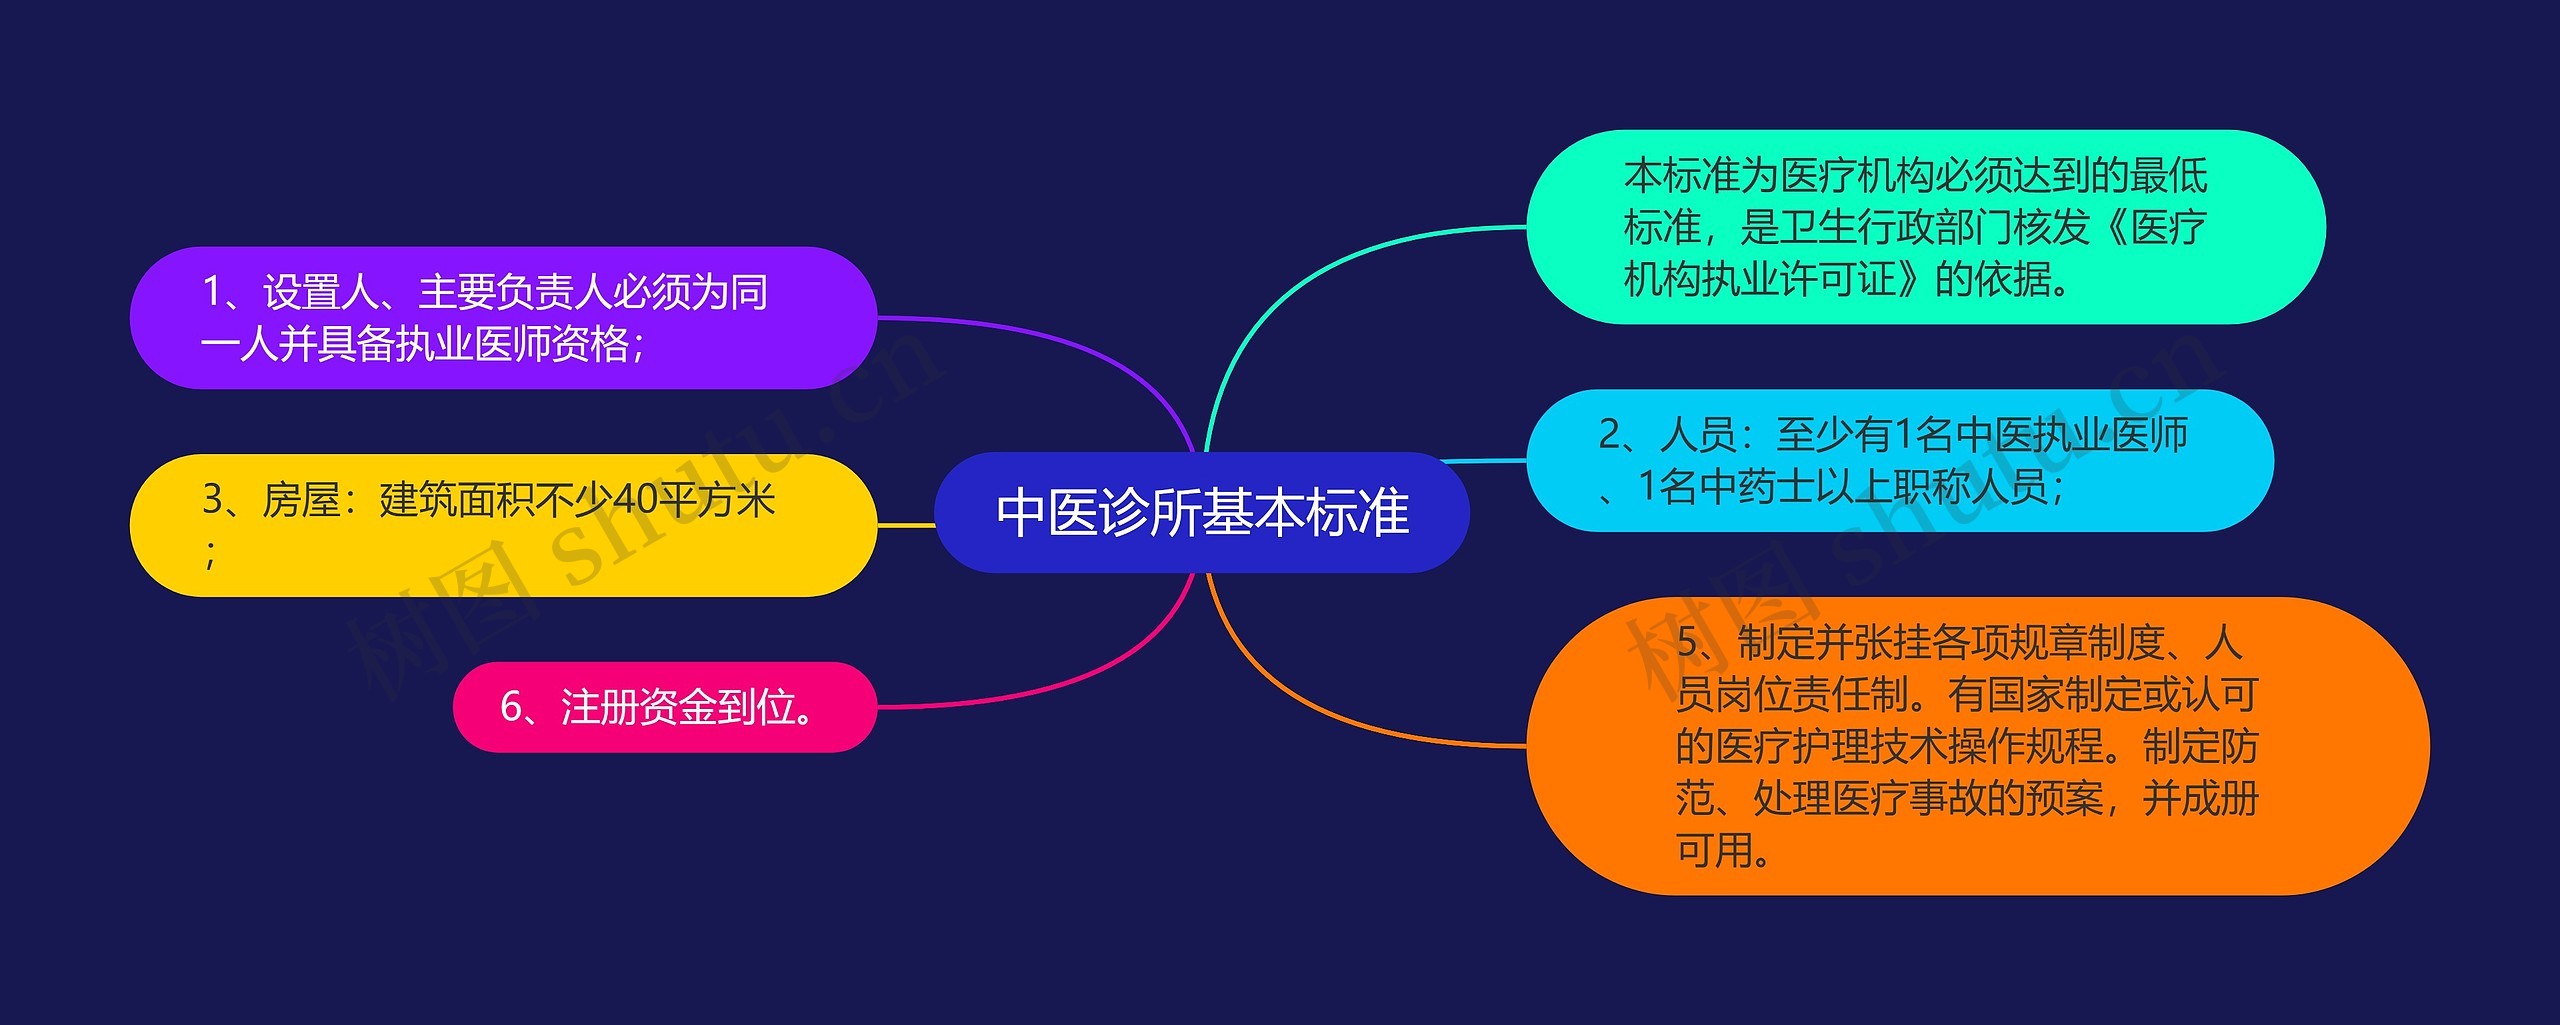 中医诊所基本标准思维导图